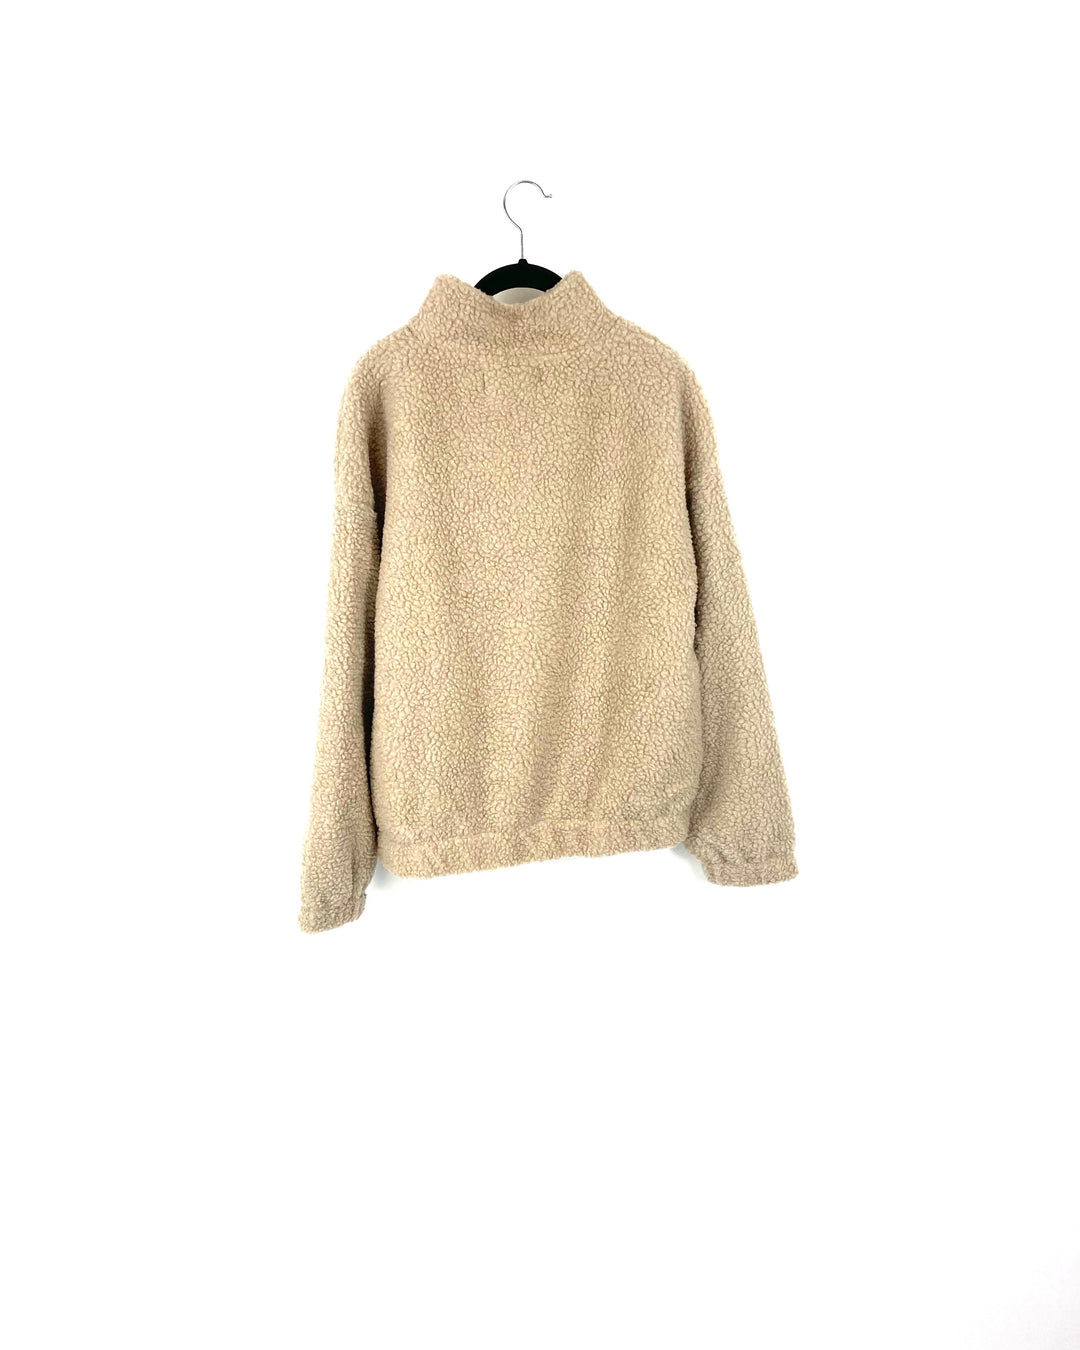 Tan Sherpa Quarter-Zip Cropped Sweatshirt - Medium, Large